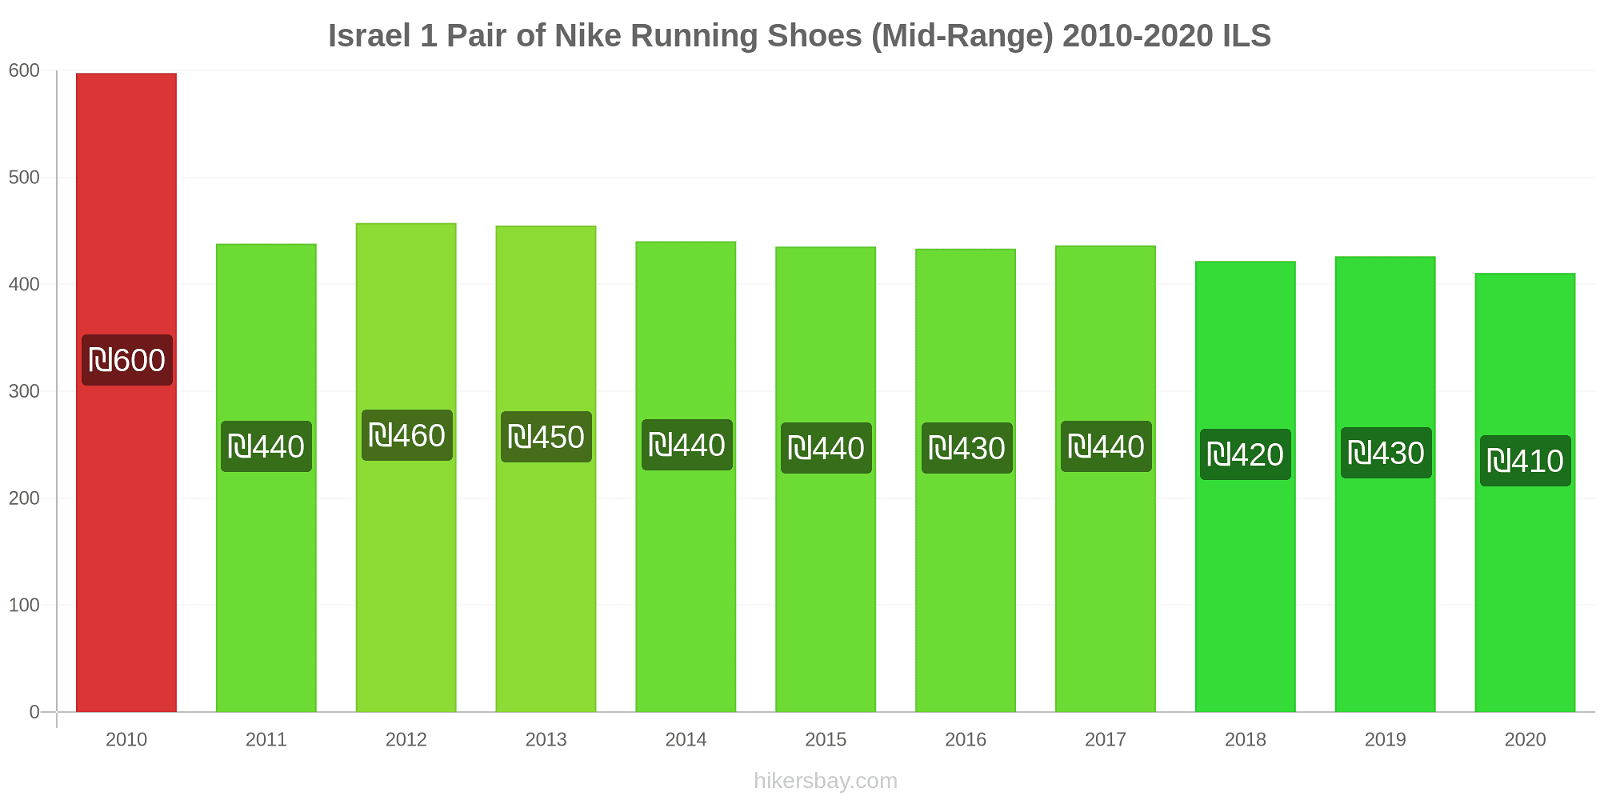 Israel price changes 1 Pair of Nike Running Shoes (Mid-Range) hikersbay.com